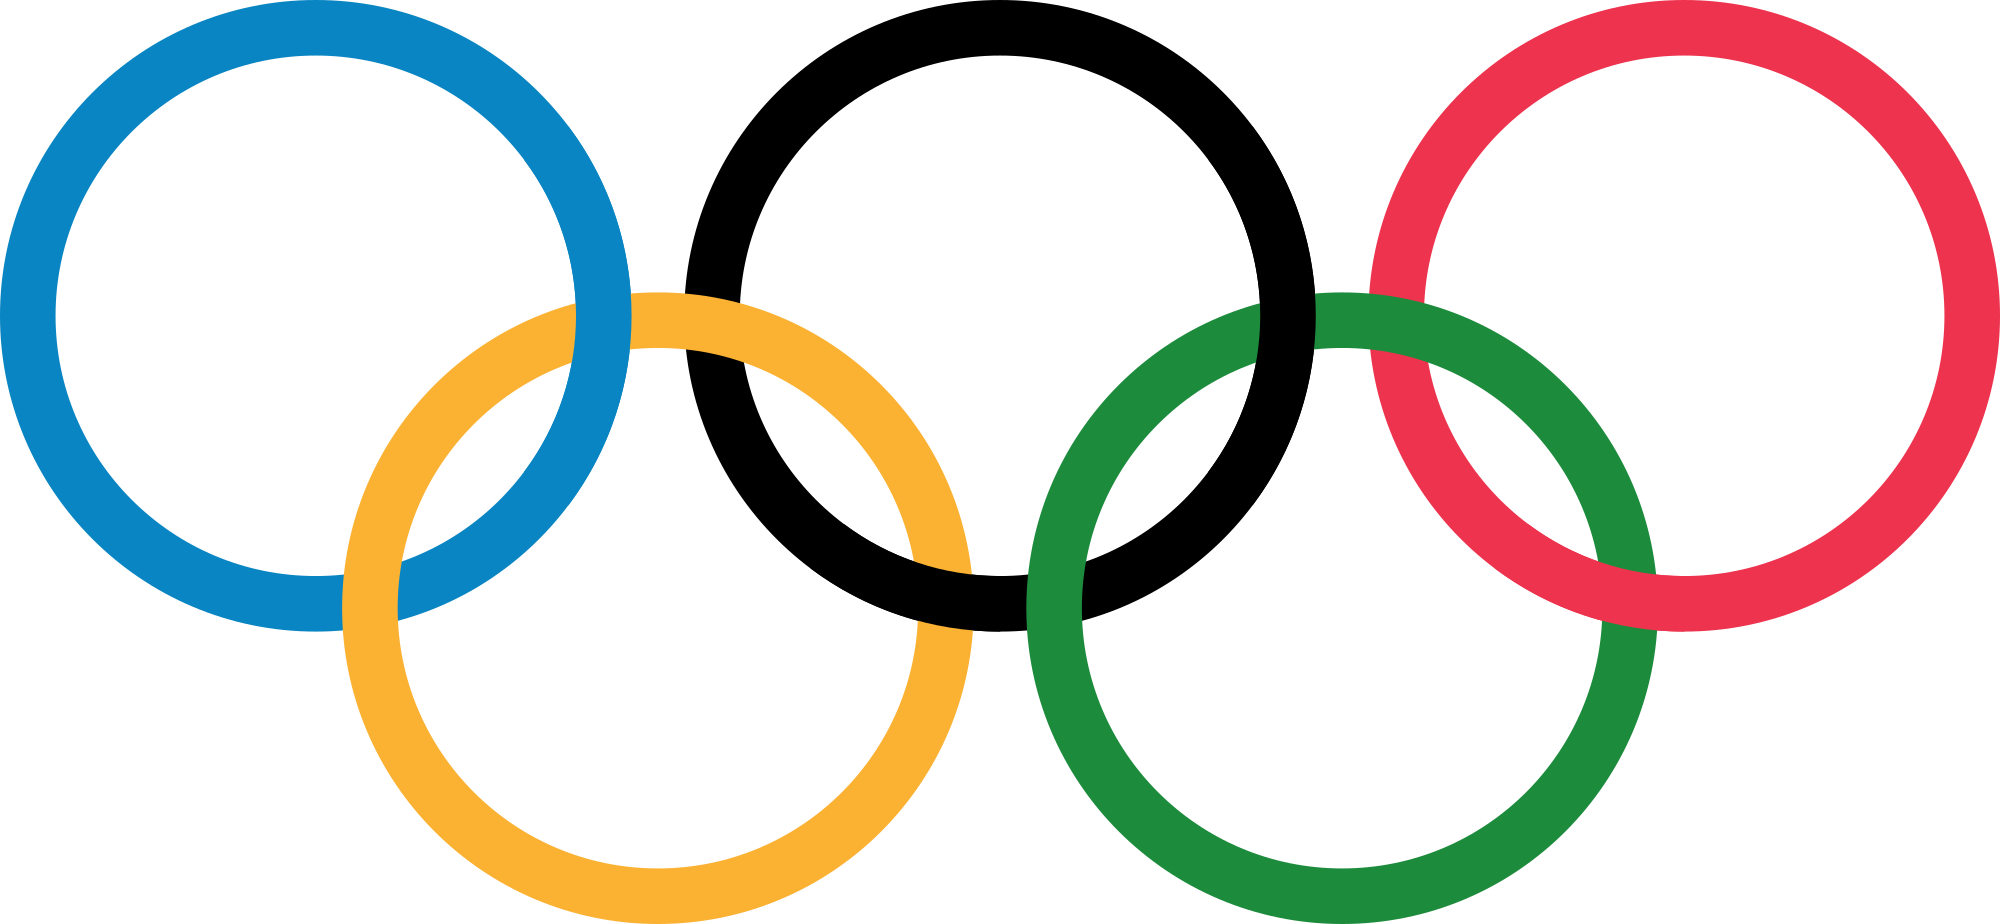 Olympics greek